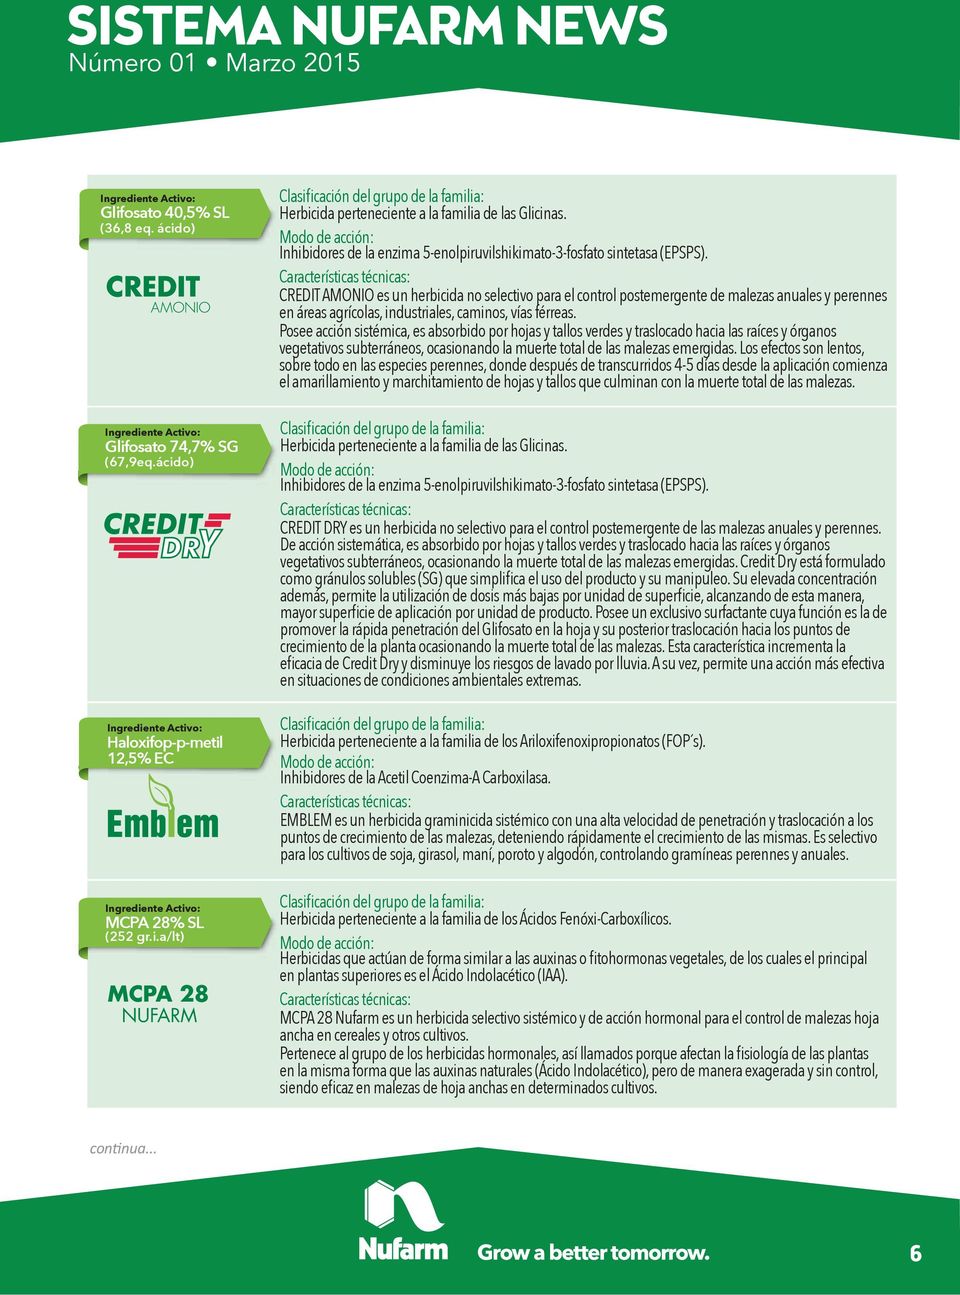 CREDIT AMONIO es un herbicida no selectivo para el control postemergente de malezas anuales y perennes en áreas agrícolas, industriales, caminos, vías férreas.